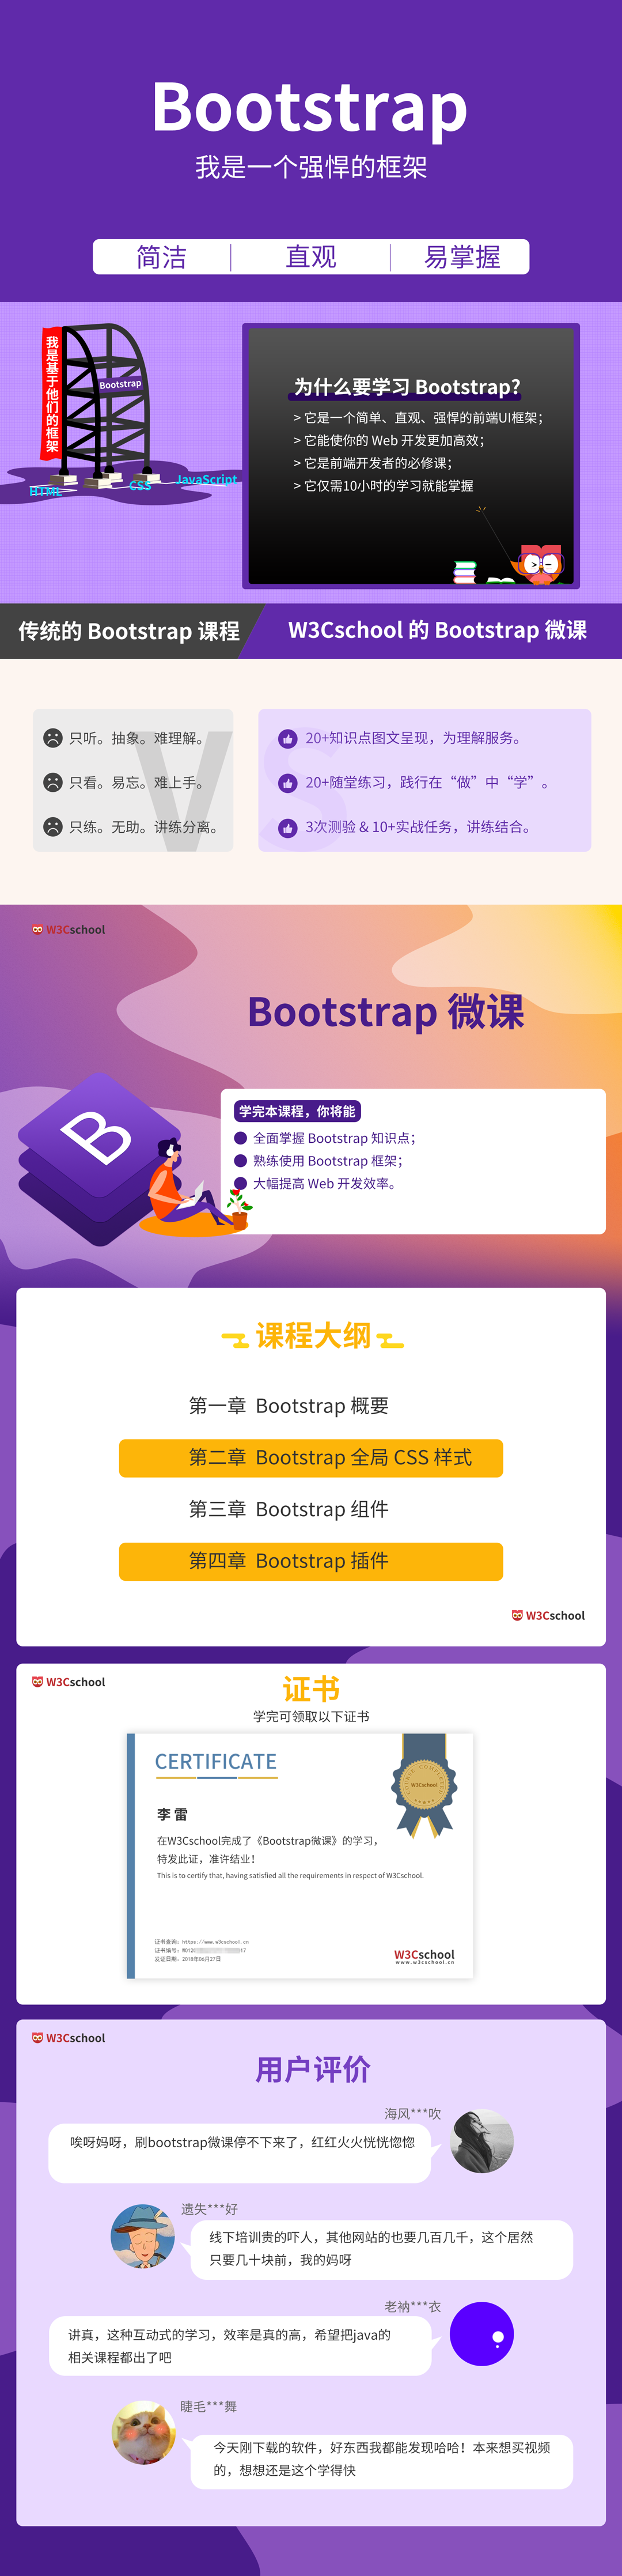 Bootstrap微课课程介绍